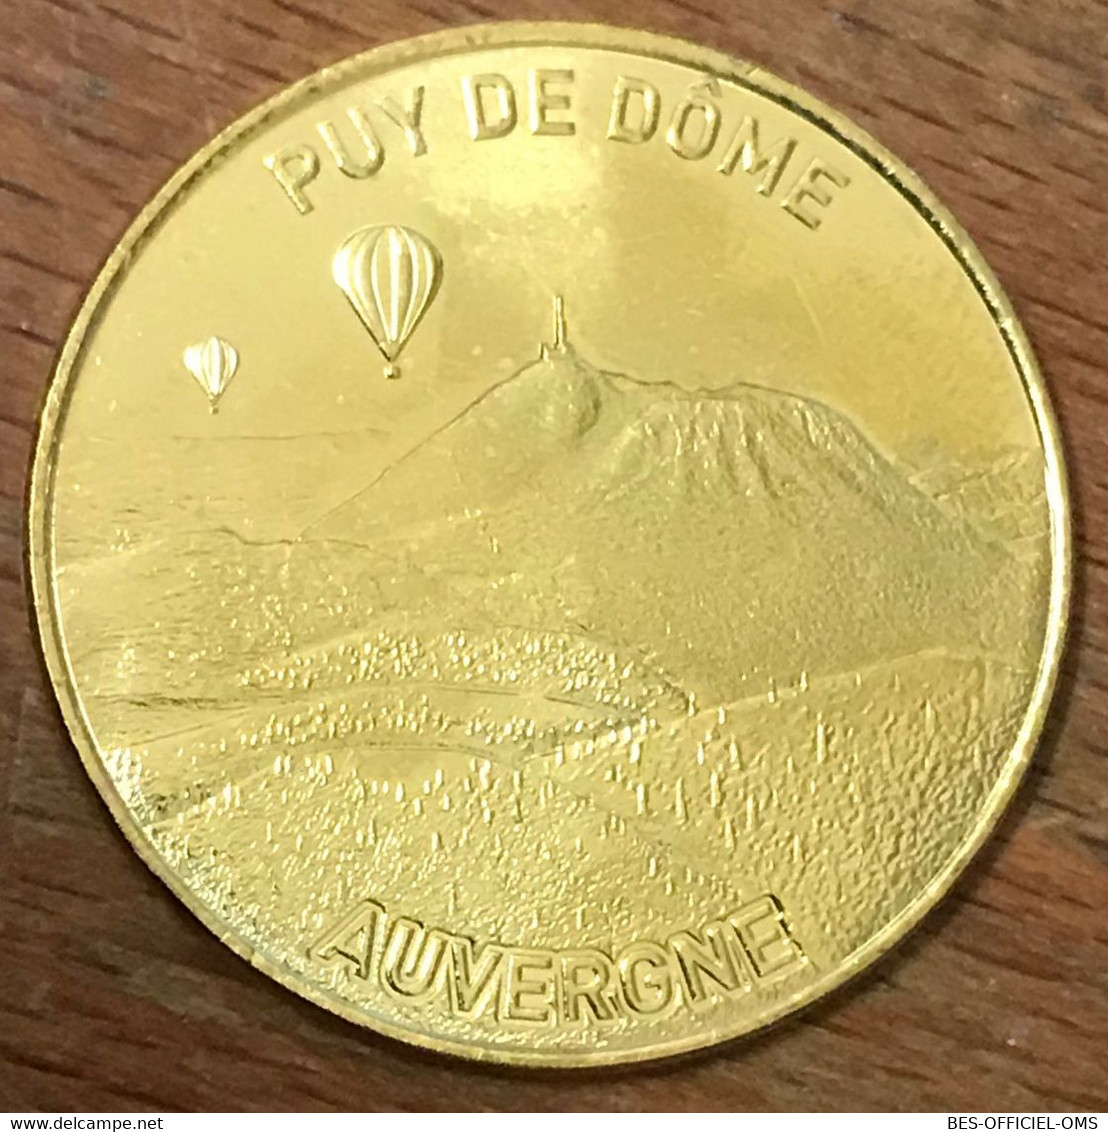 63 ORCINES PUY DE DÔME AUVERGNE MDP 2019 MÉDAILLE MONNAIE DE PARIS JETON TOURISTIQUE MEDALS COINS TOKENS - 2019